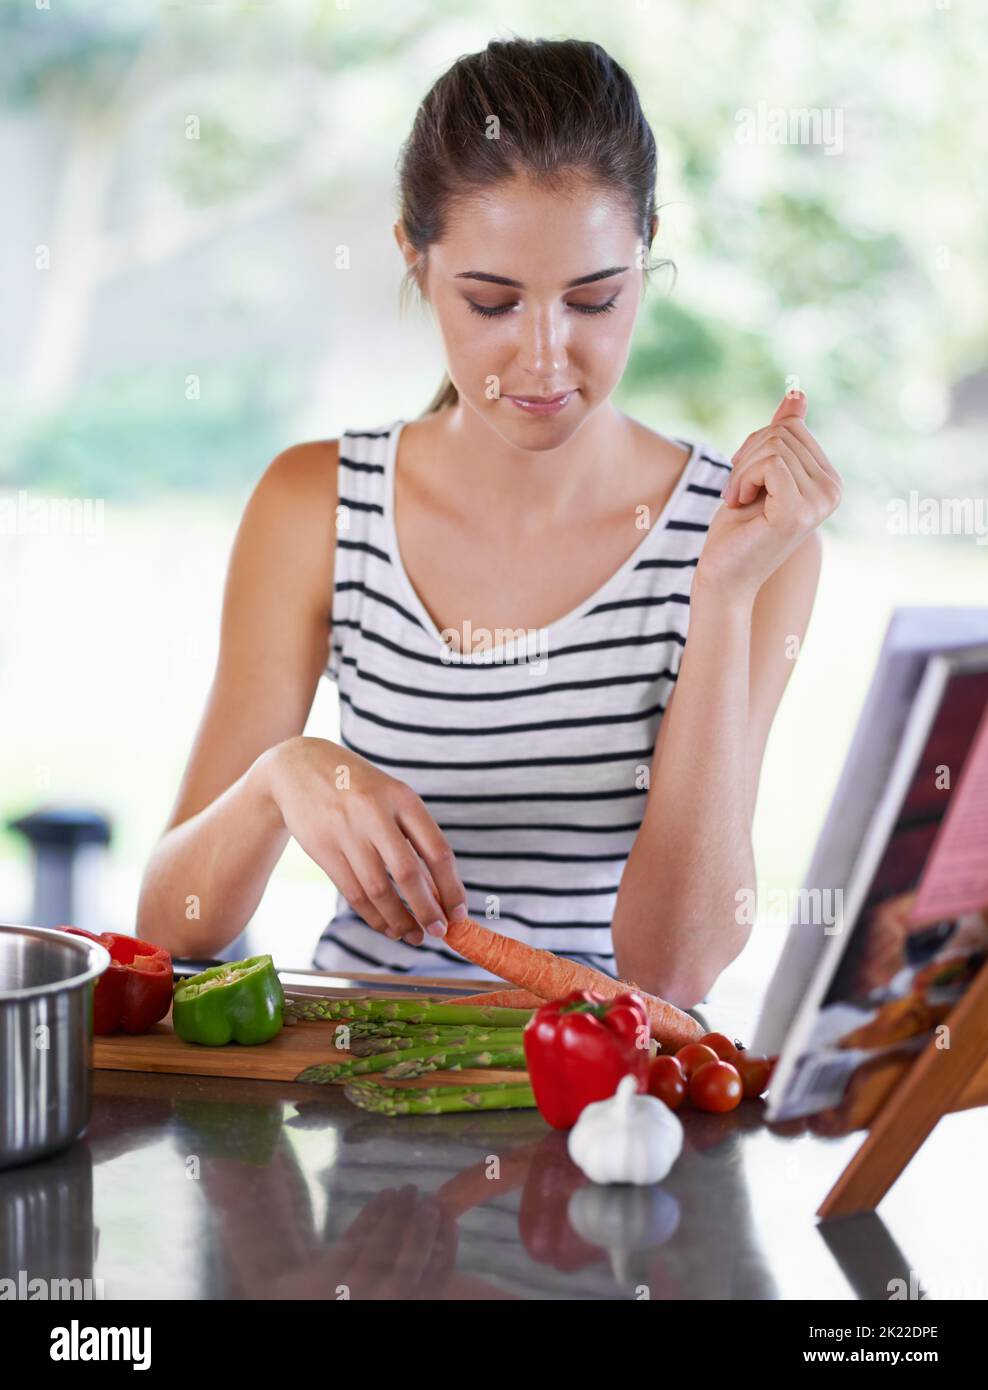 Ein gesundes Leben führen. Eine junge Frau, die aus einem Rezeptbuch kocht. Stockfoto